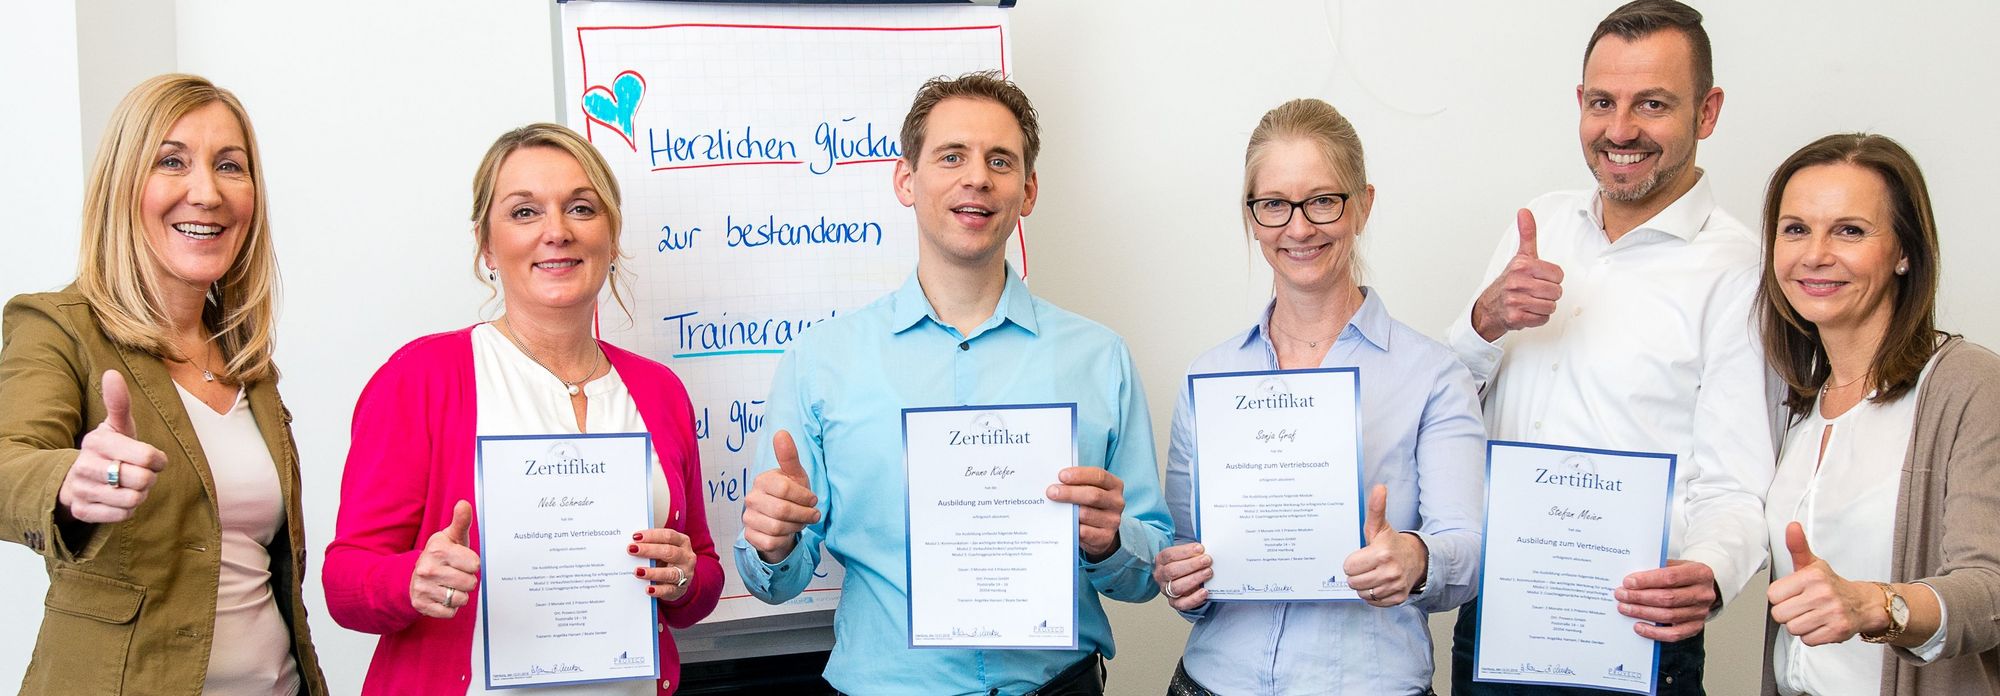 Großes Schmuckbild: Foto mit Angelika Hansen, Beate Denker und 4 Personen,
                                                  die eine Trainerausbildung gemacht haben und ihre neuen Zertifikate zeigen.